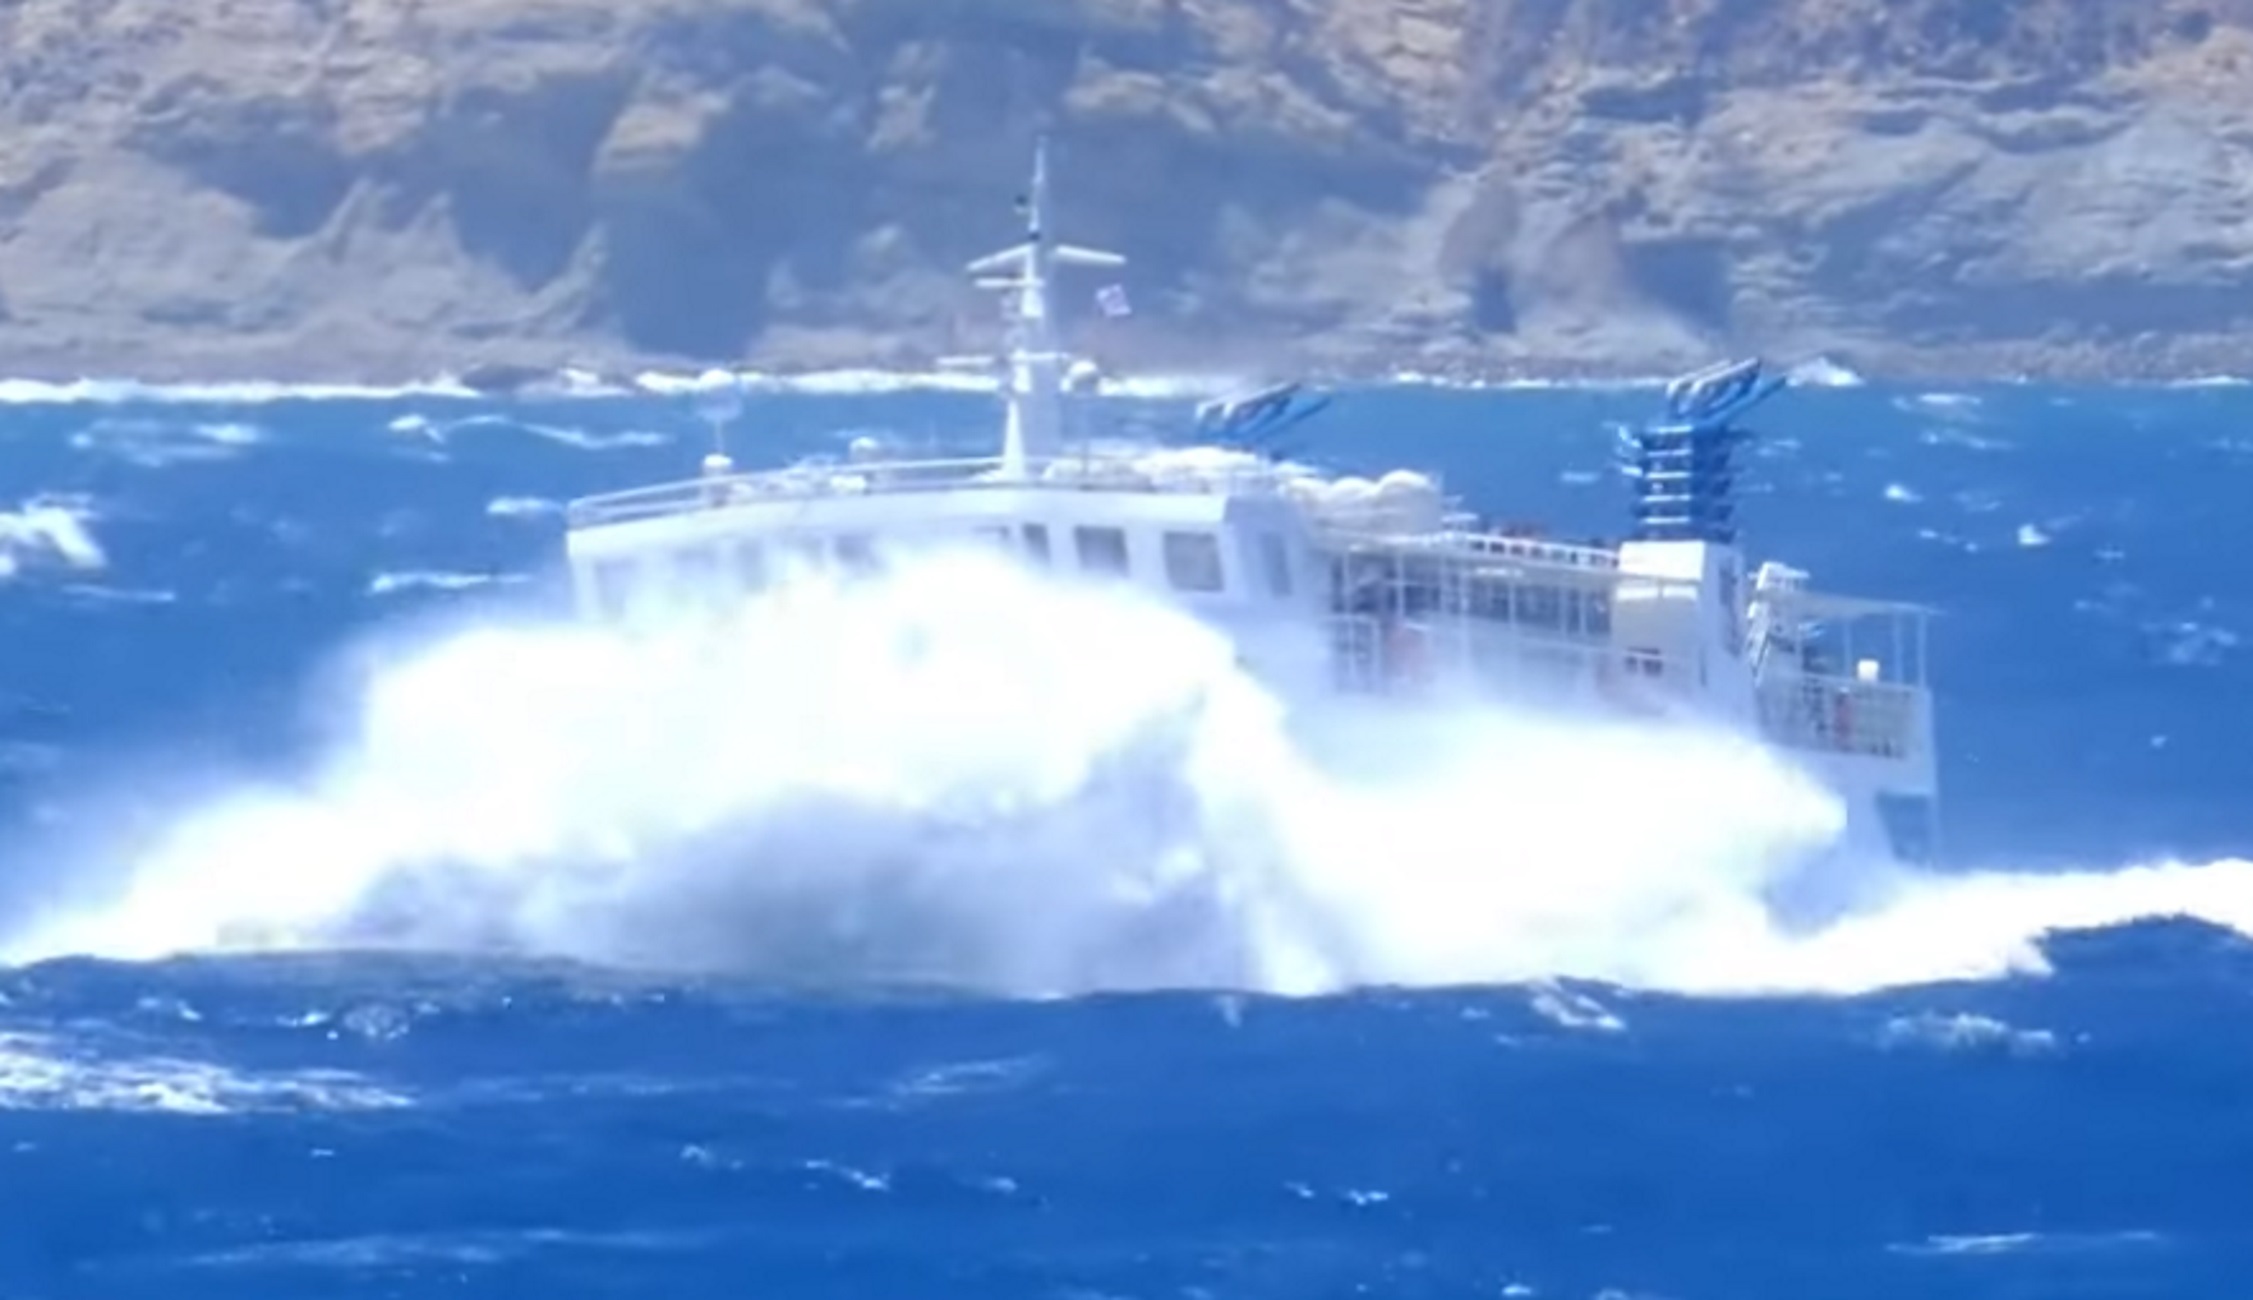 Κυκλάδες: Βίντεο με το πλοίο Σκοπελίτης να δίνει μάχη στα κύματα έξω από τη Νάξο